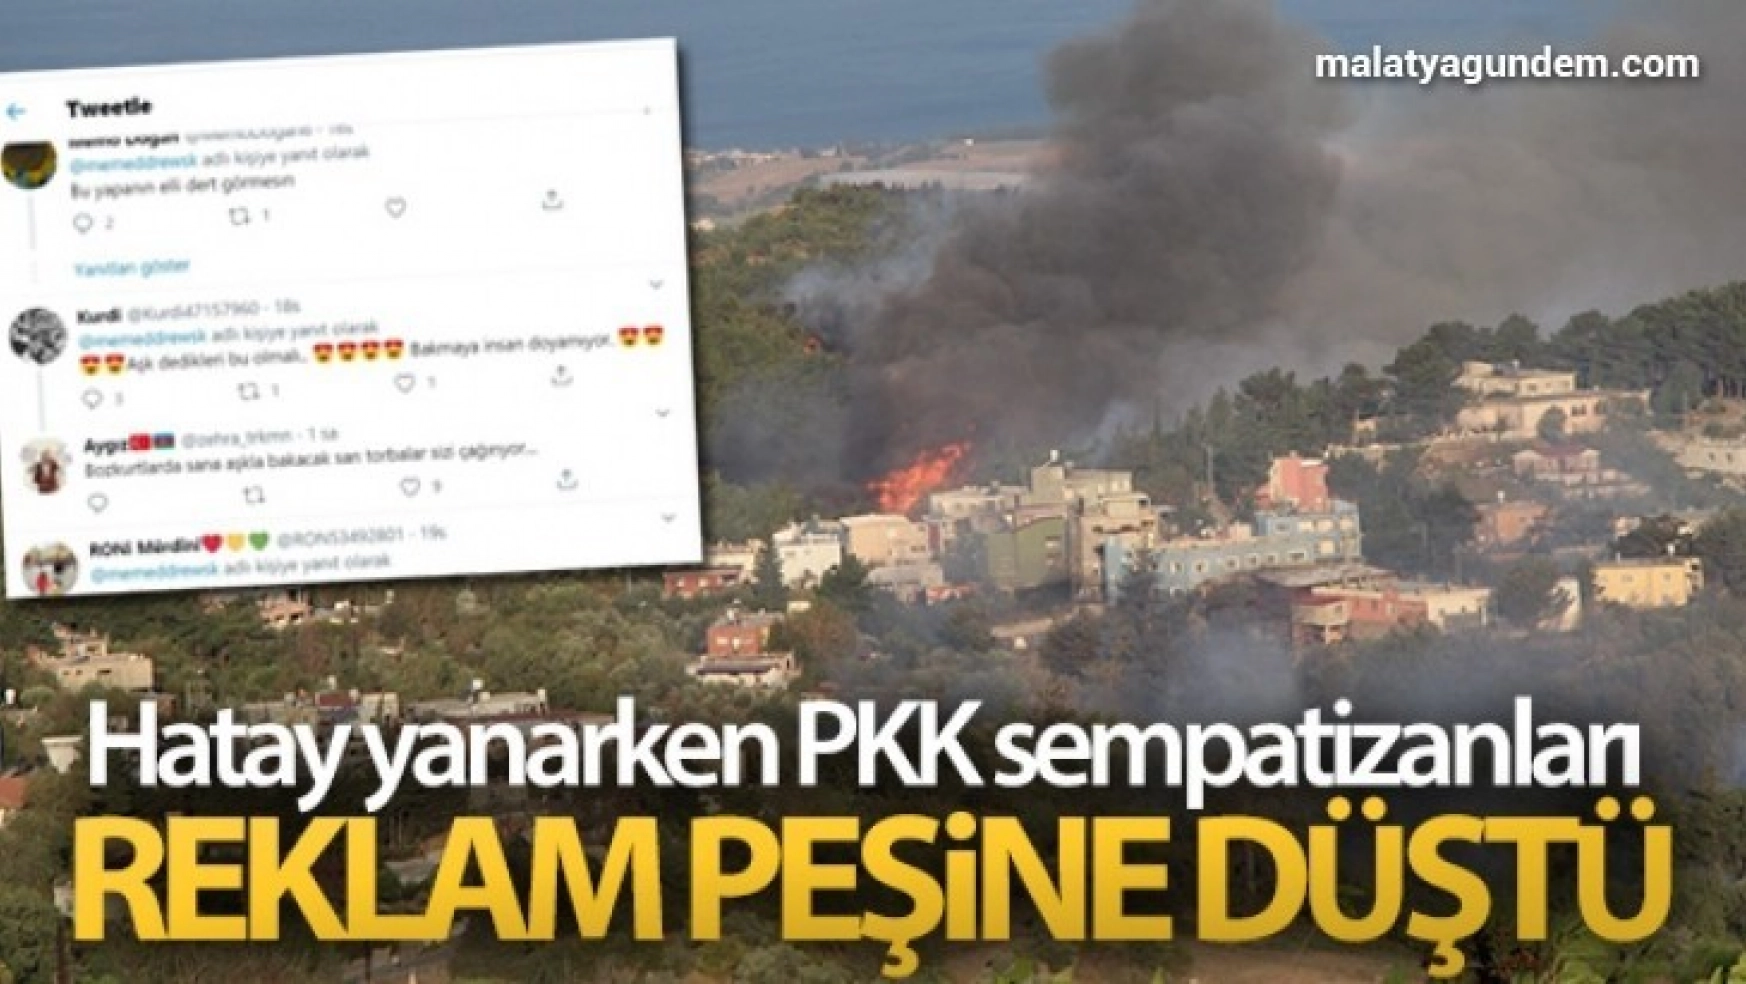 Hatay yanarken, PKK sempatizanları reklam peşine düştü